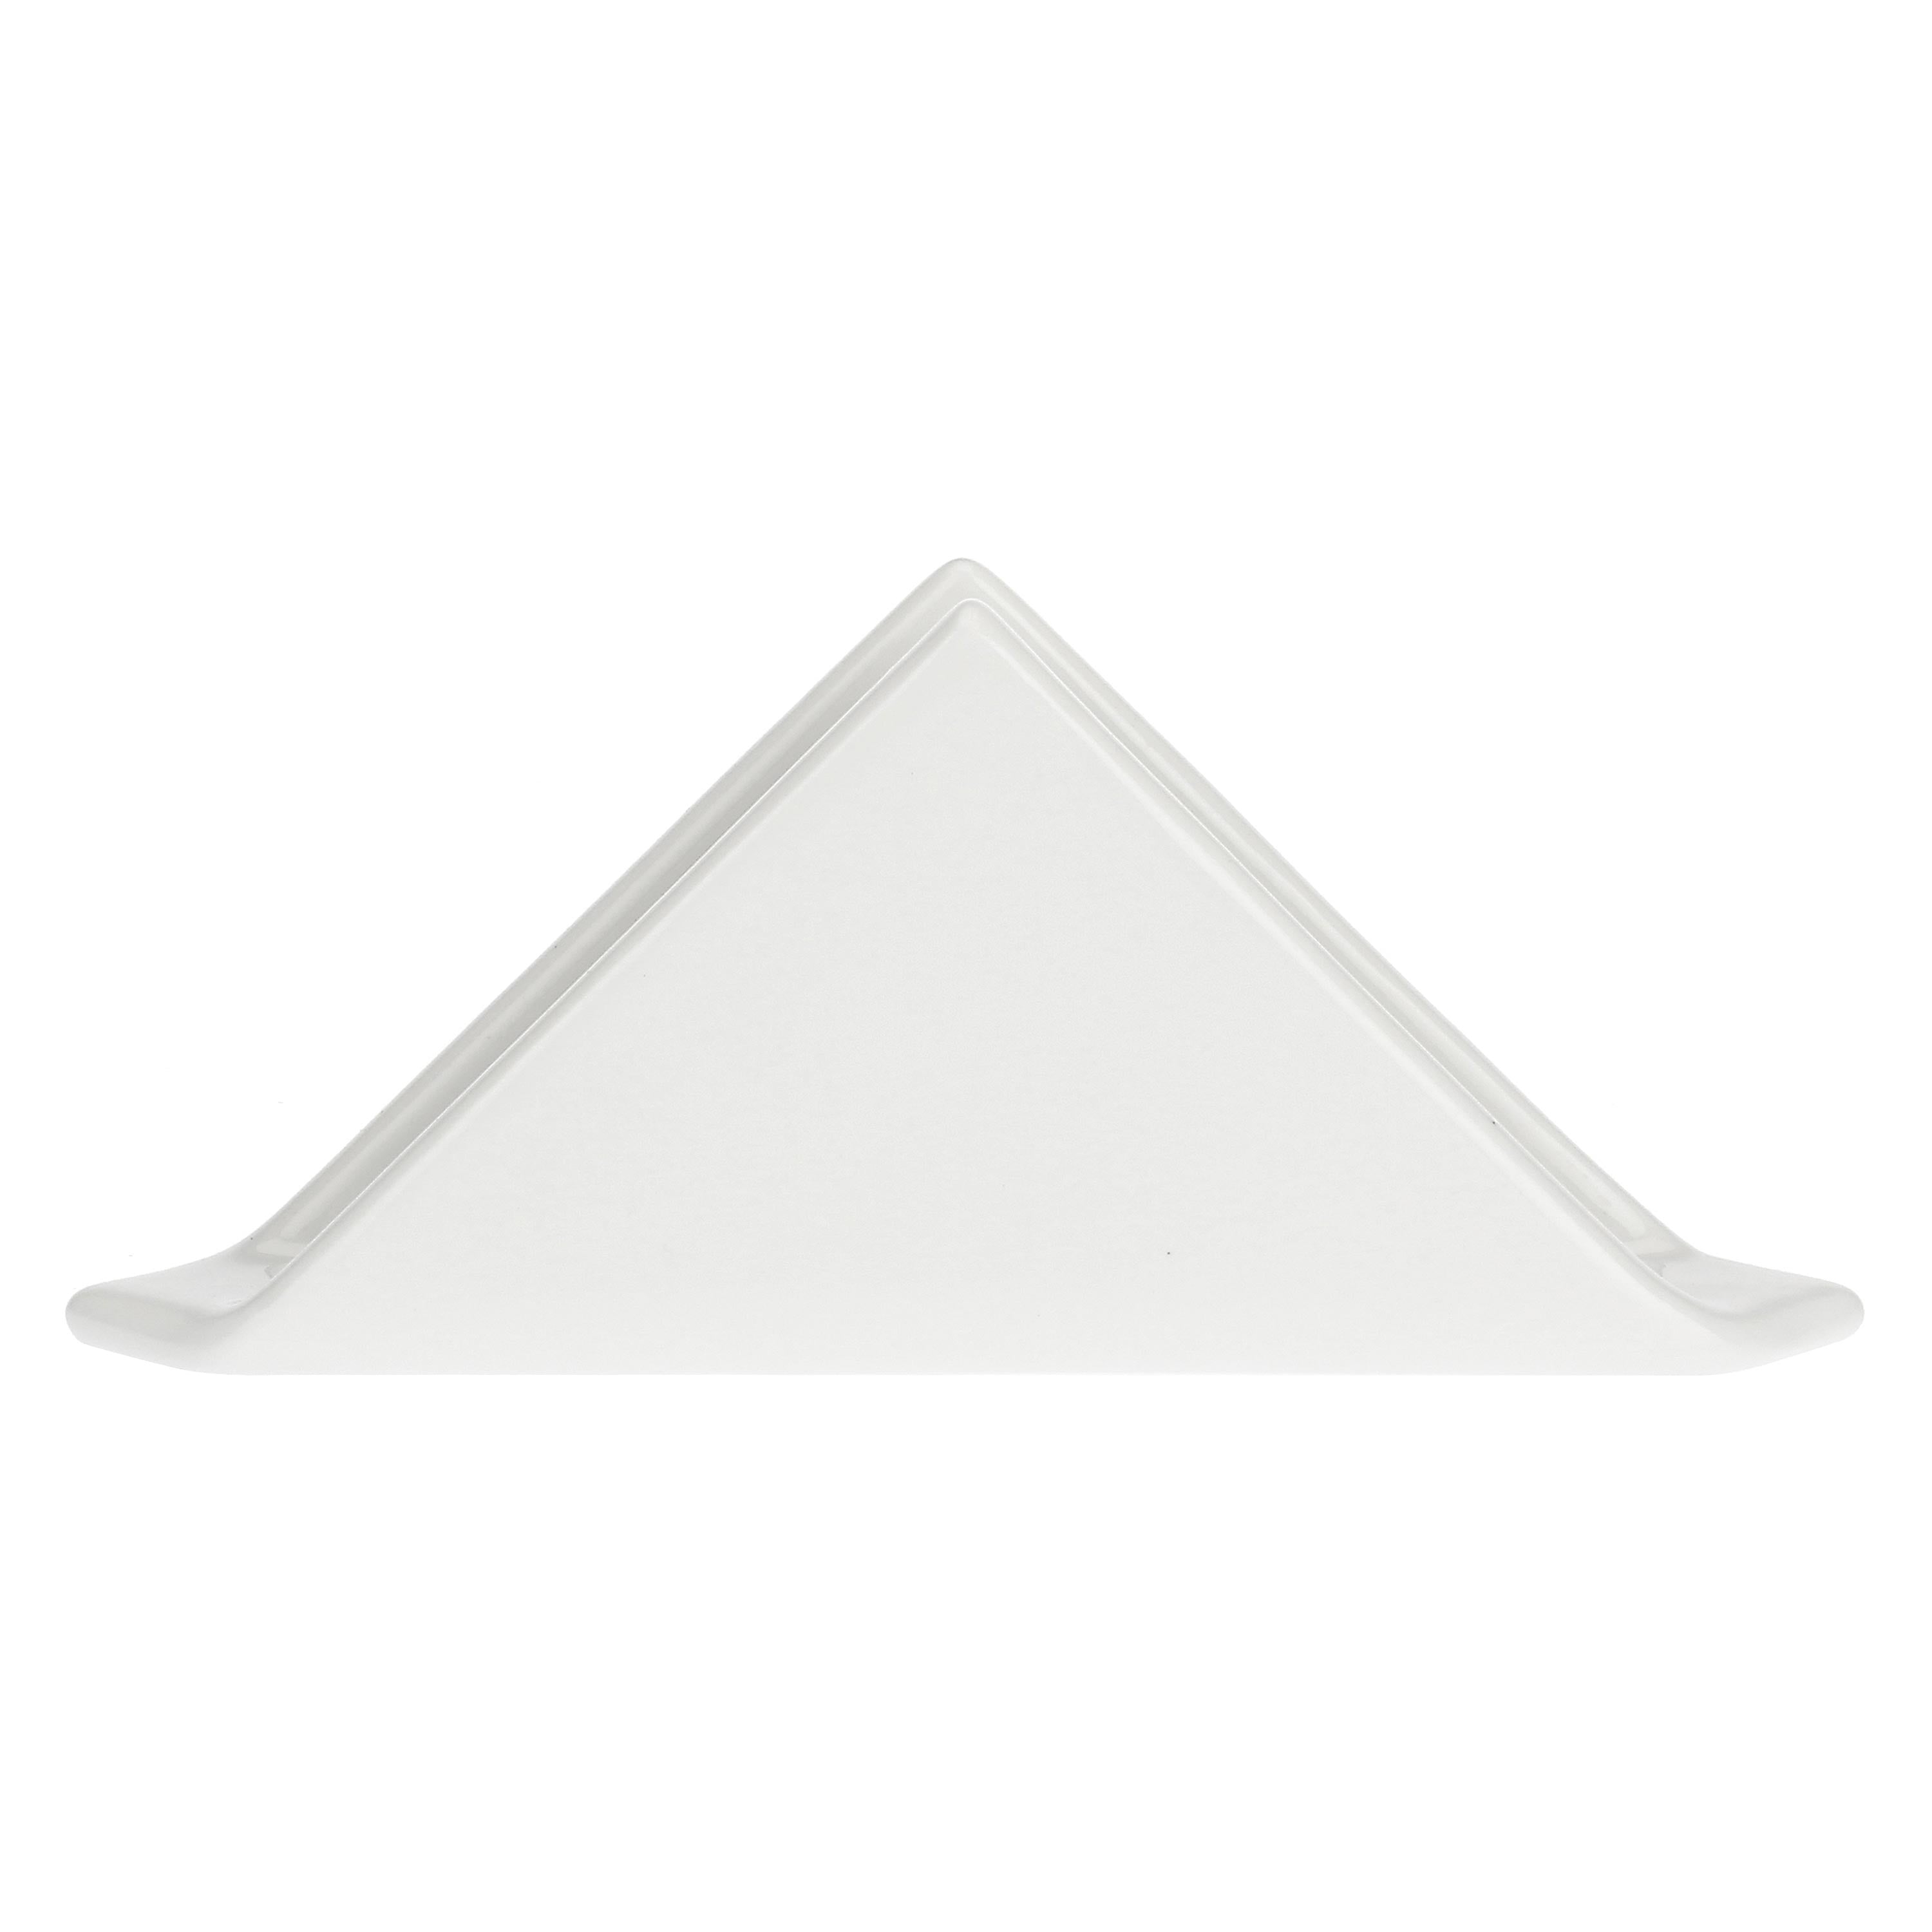 LA PORCELLANA BIANCA - Portatovaglioli Convivio Triangolare 18 cm Porcellana